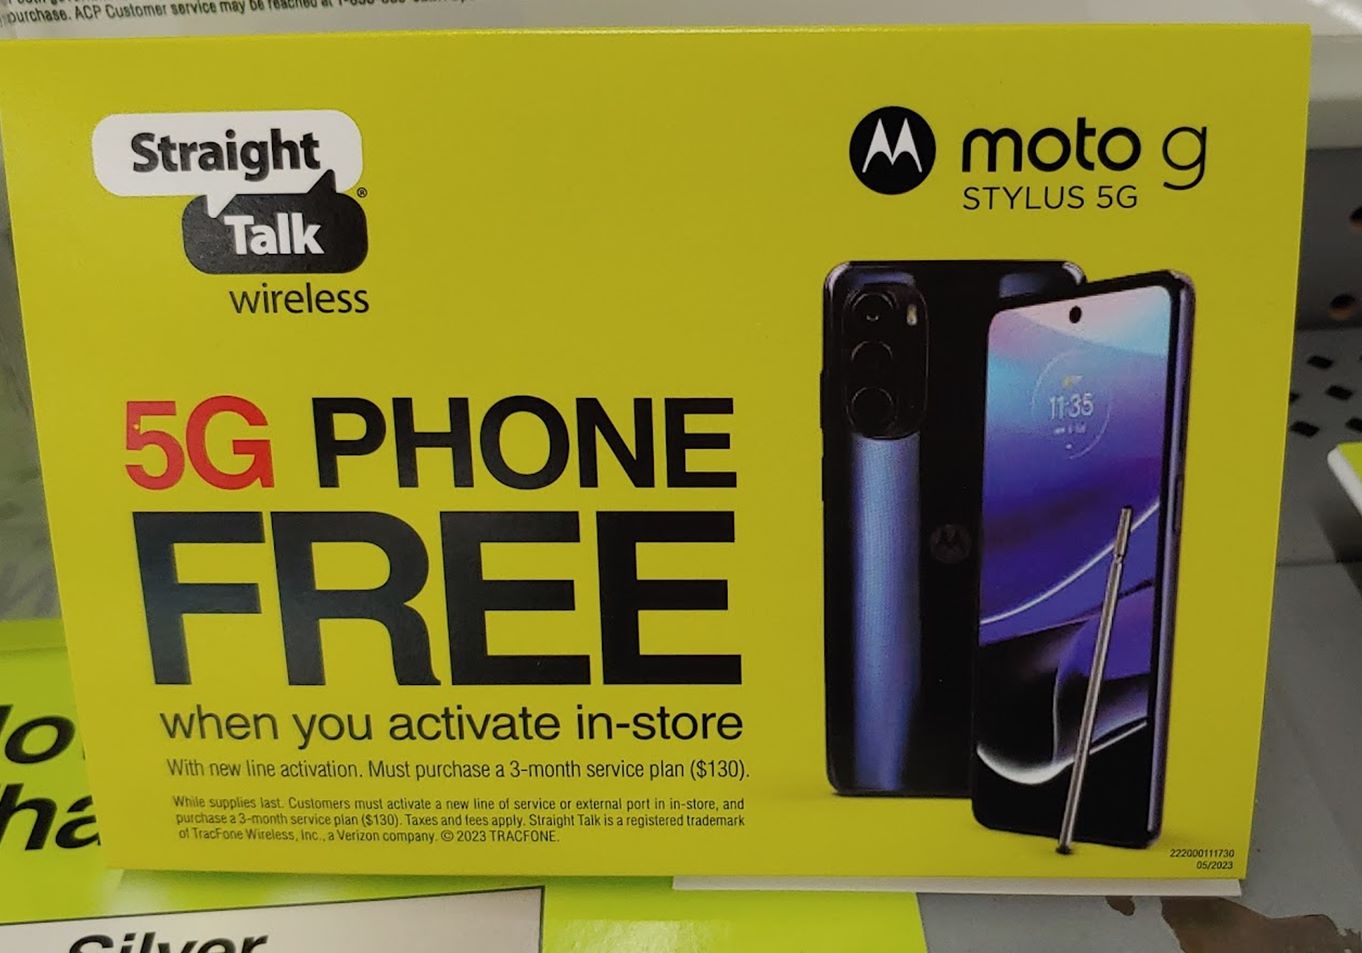 Free Motorola G Stylus 5G Offer On Display At Walmart